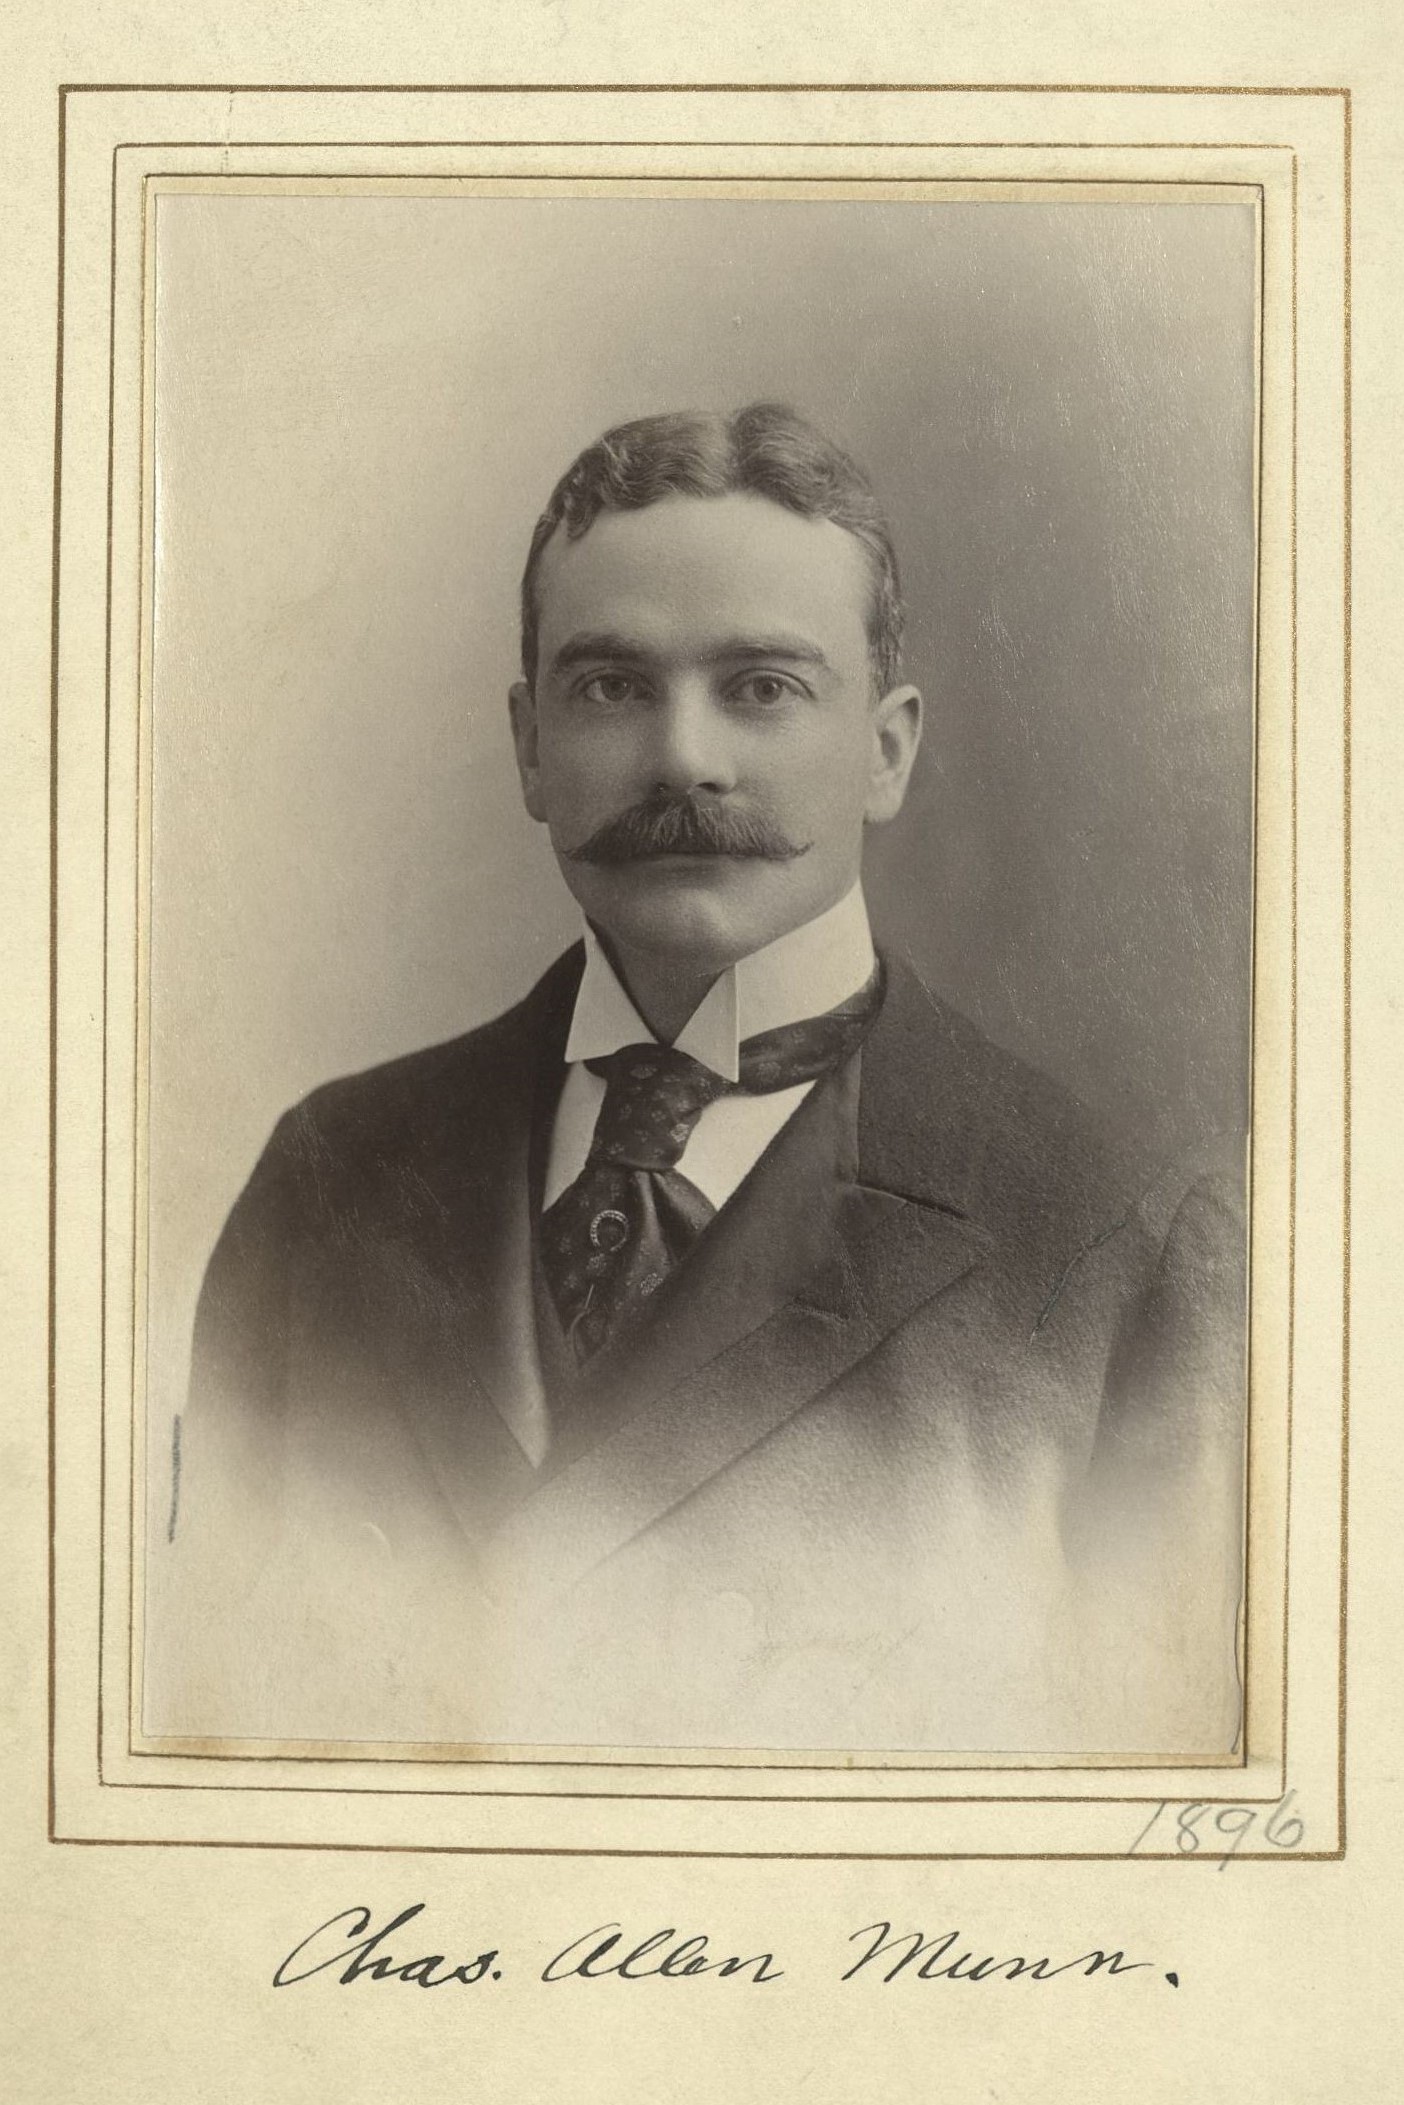 Member portrait of Charles A. Munn